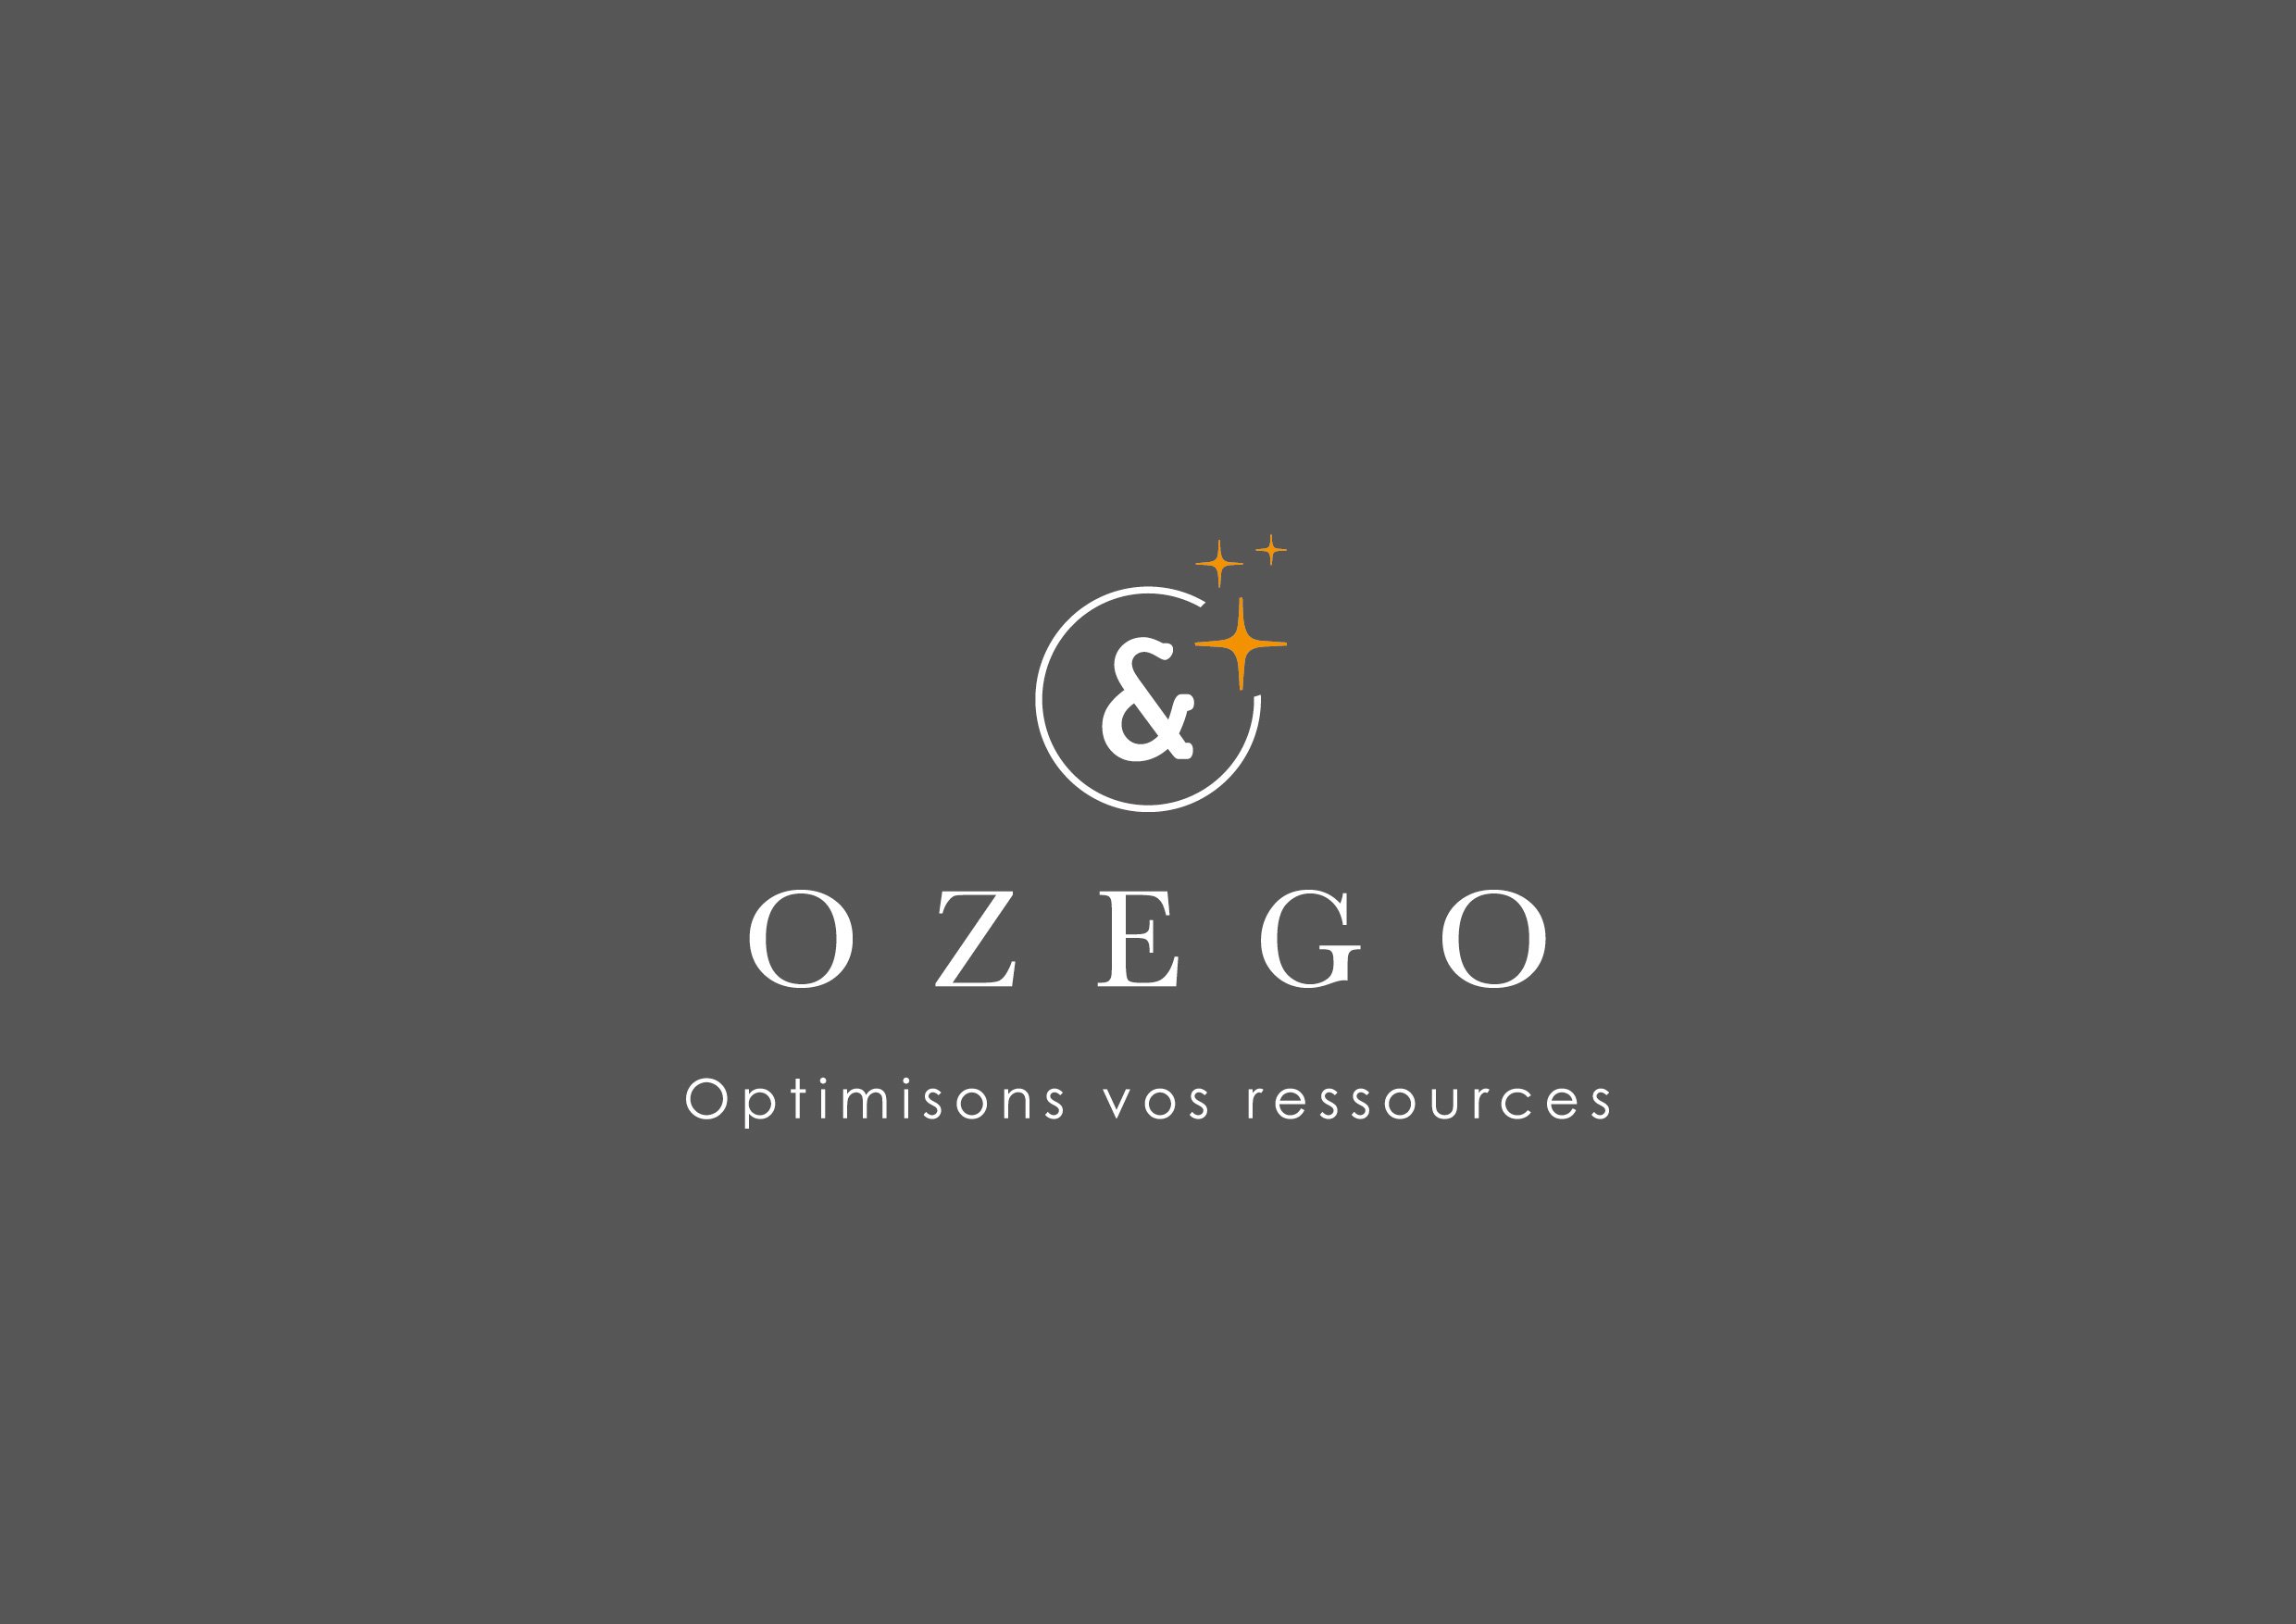 OZEGO-Couleur-Baseline-Fond-Gris